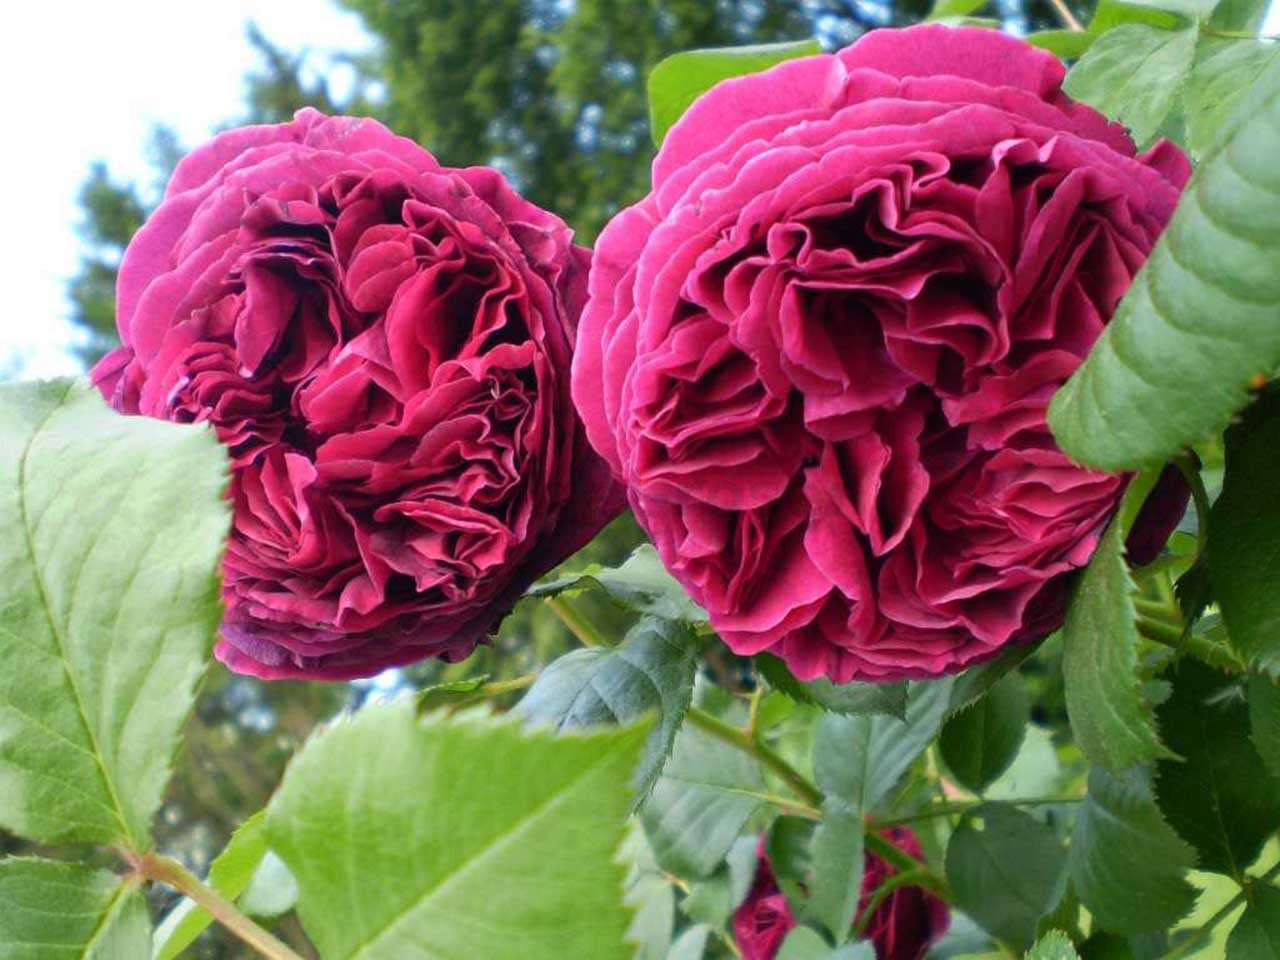 Парковая роза: описание и выращивание